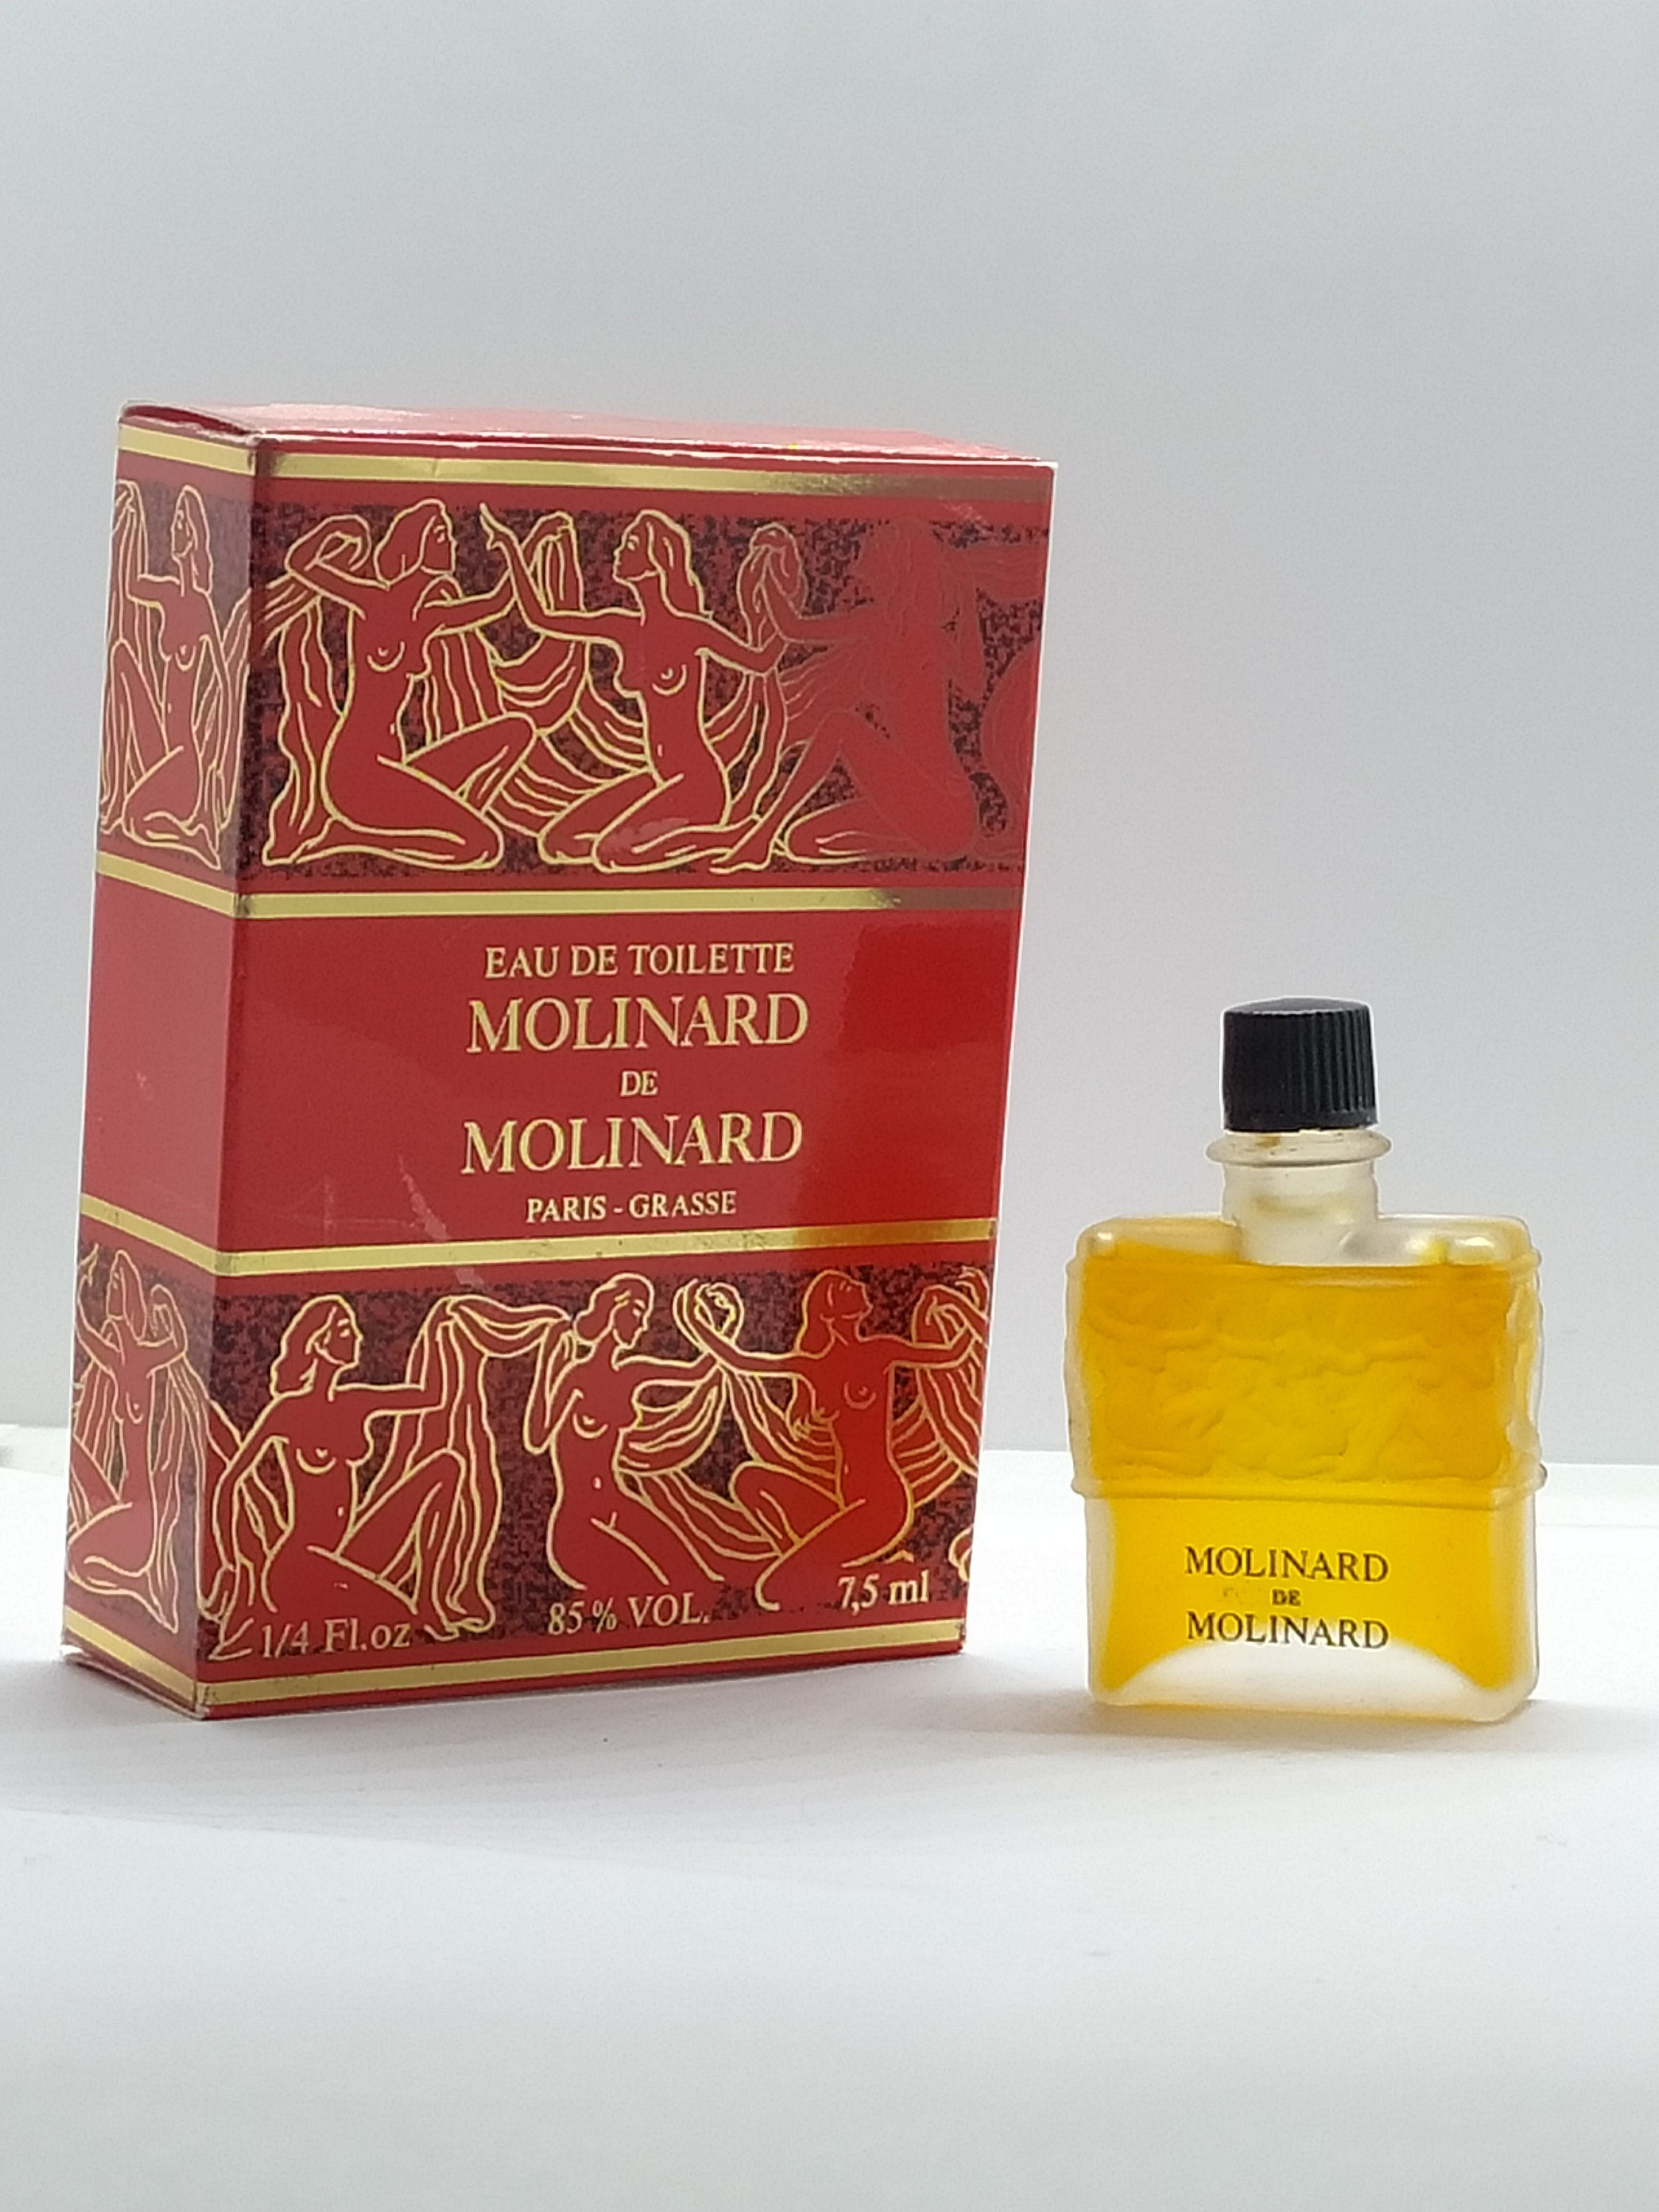 Chanel Antaeus perfume savon vintage 150 g. Sealed